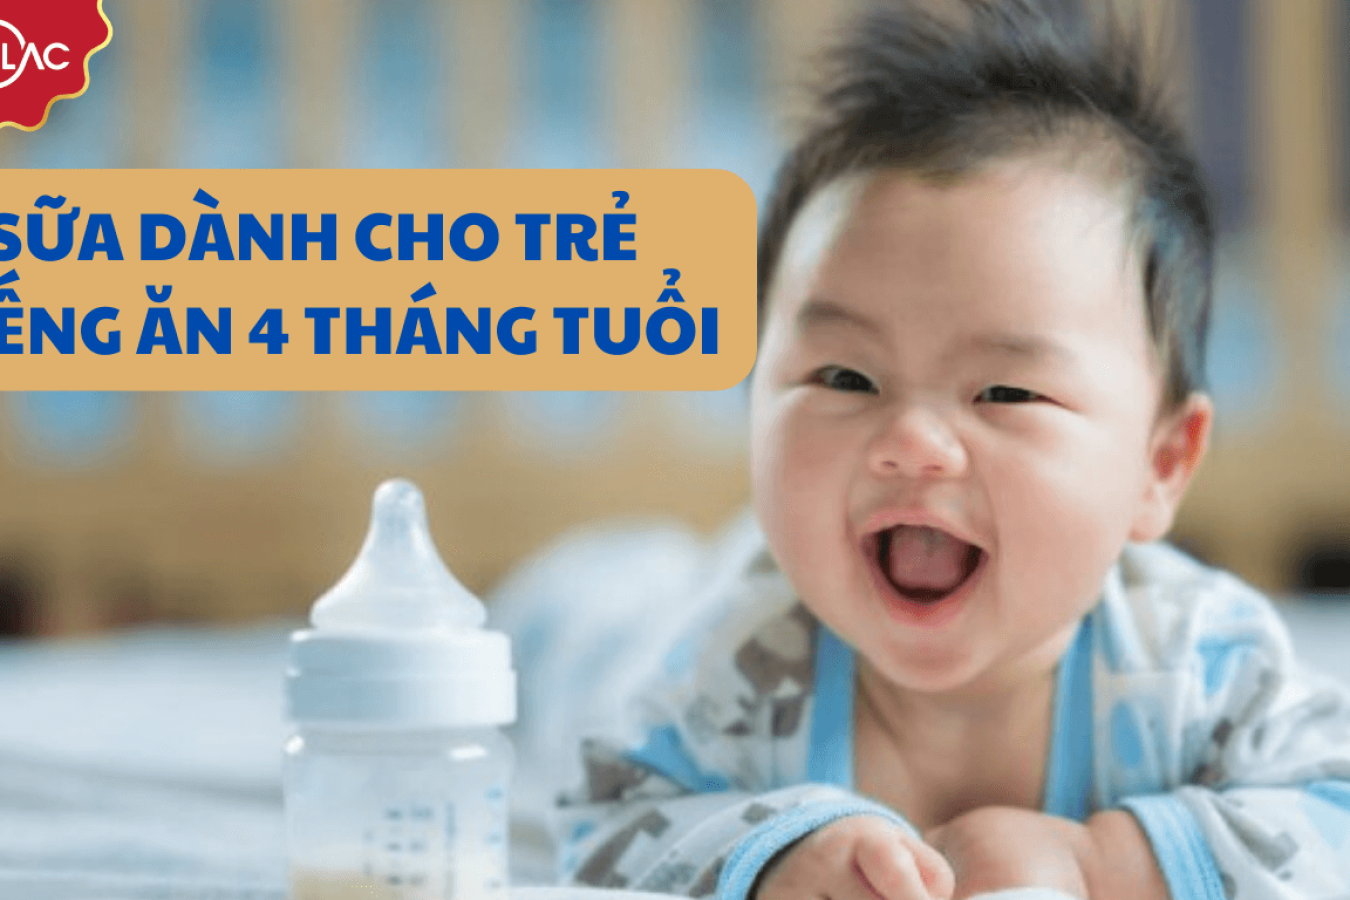 TOP 5 dòng sữa dành cho trẻ biếng ăn 4 tháng tuổi